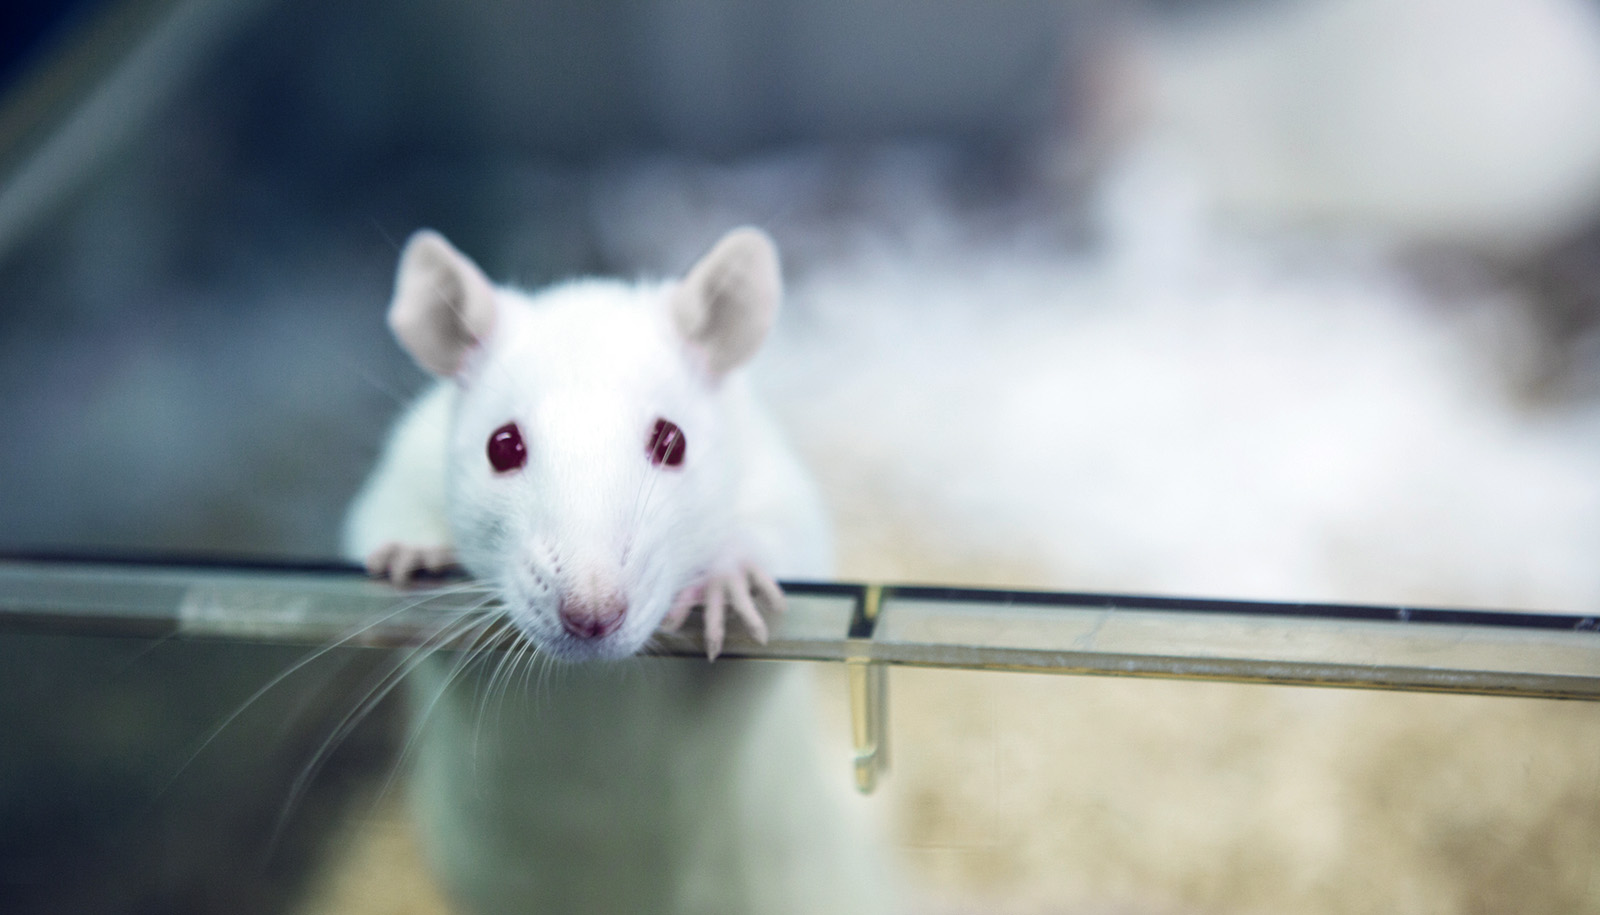 La rata despierta rechazo por parte del ser humano (Getty Images)